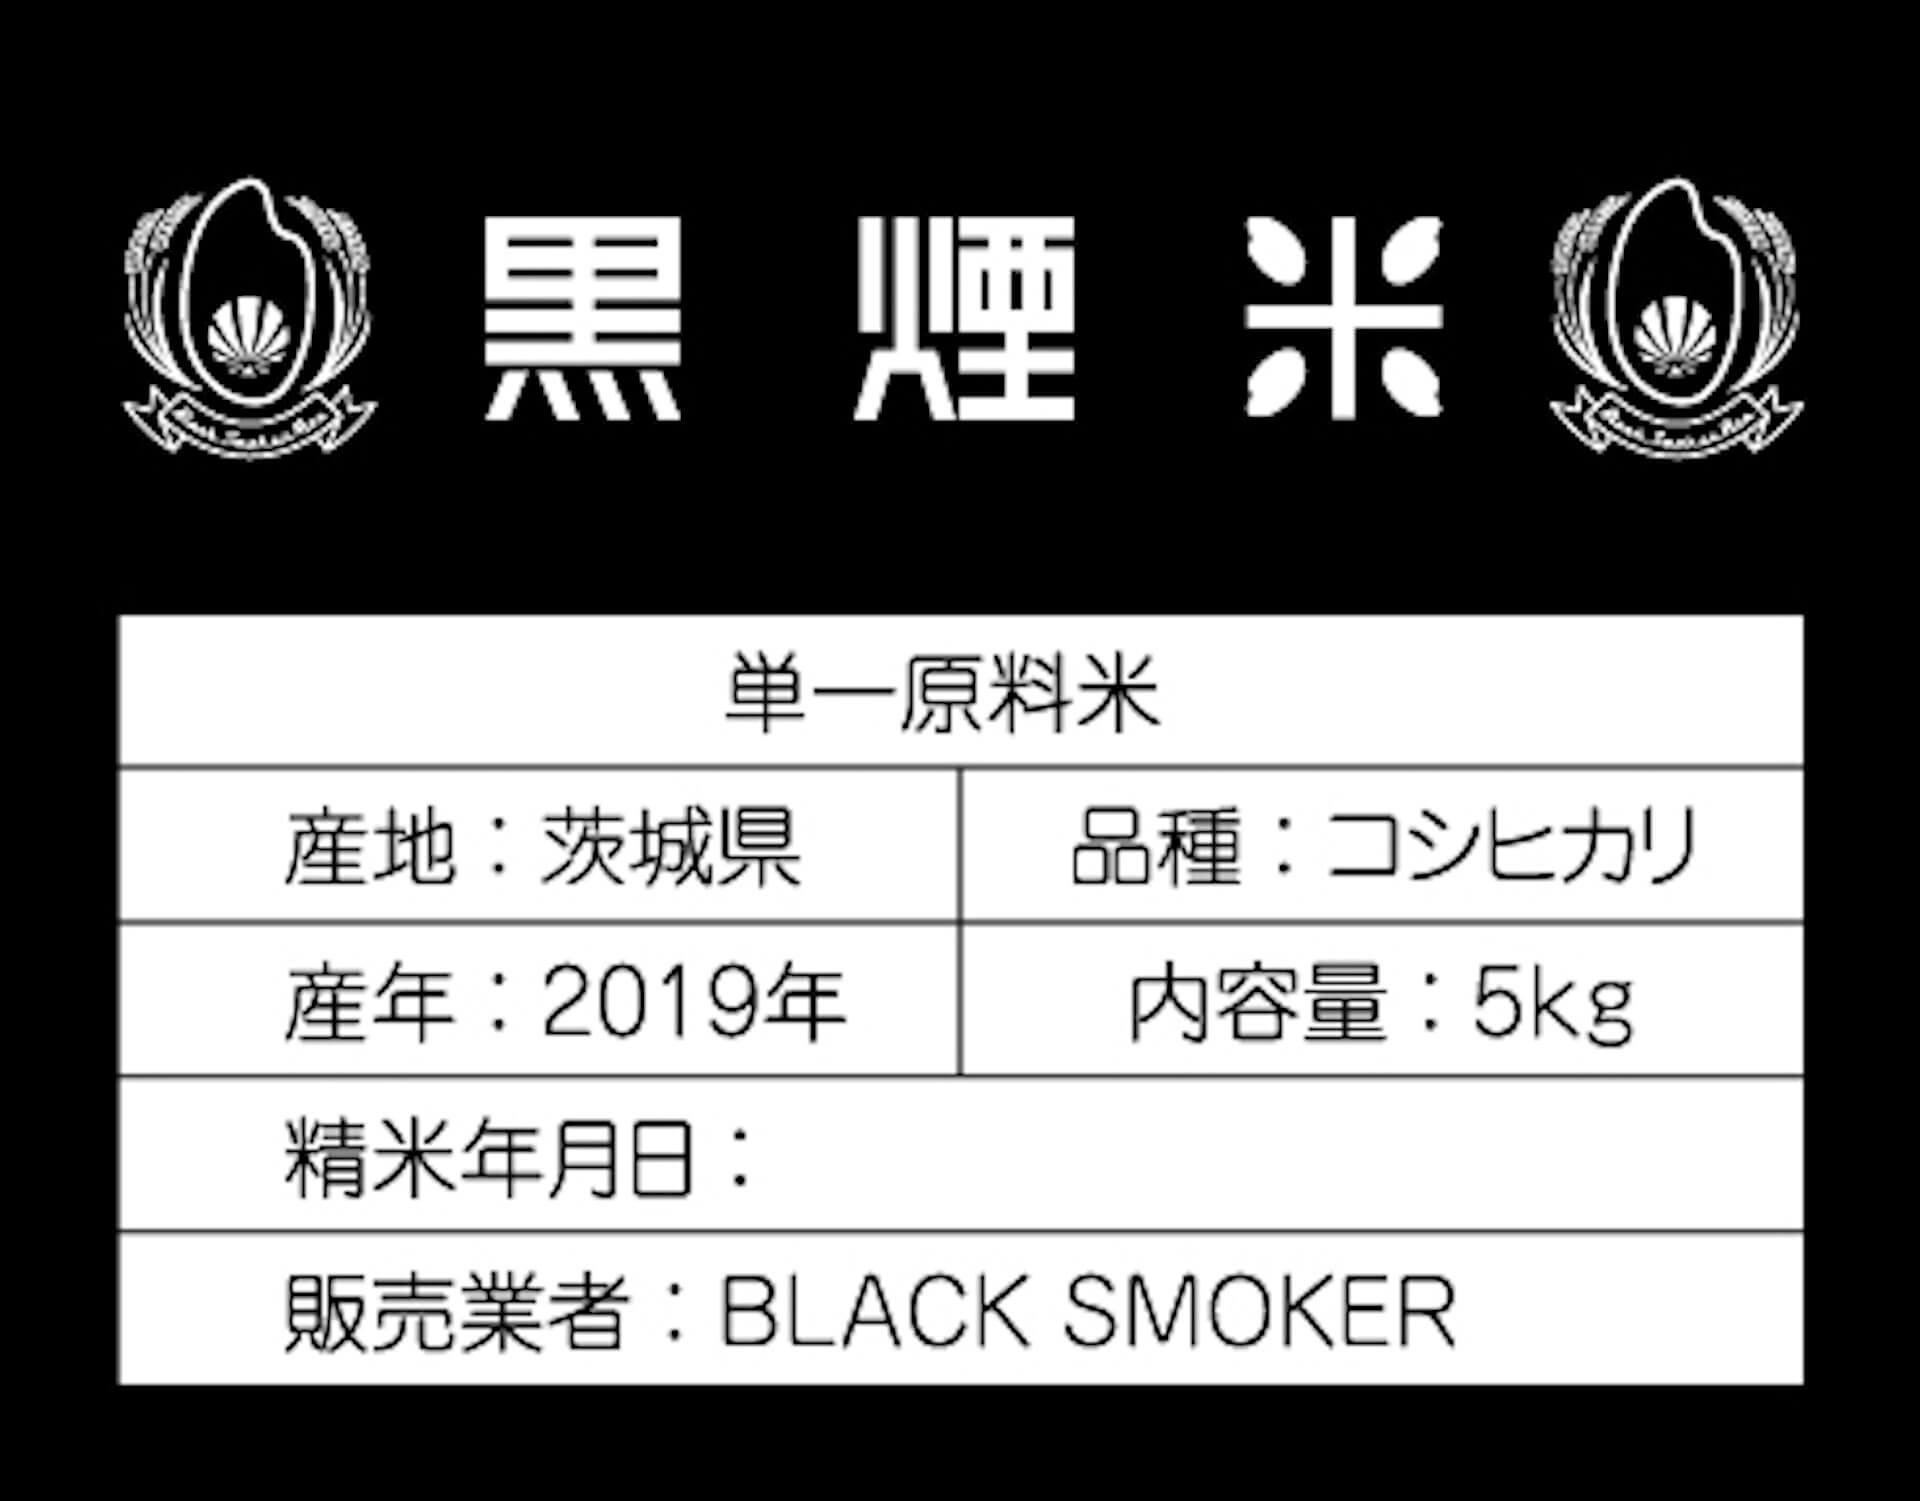 【黒煙ファーム発】〈BLACK SMOKER RECORDS〉が「米」を発売中 art-culture191001-blacksmoker-rice-1